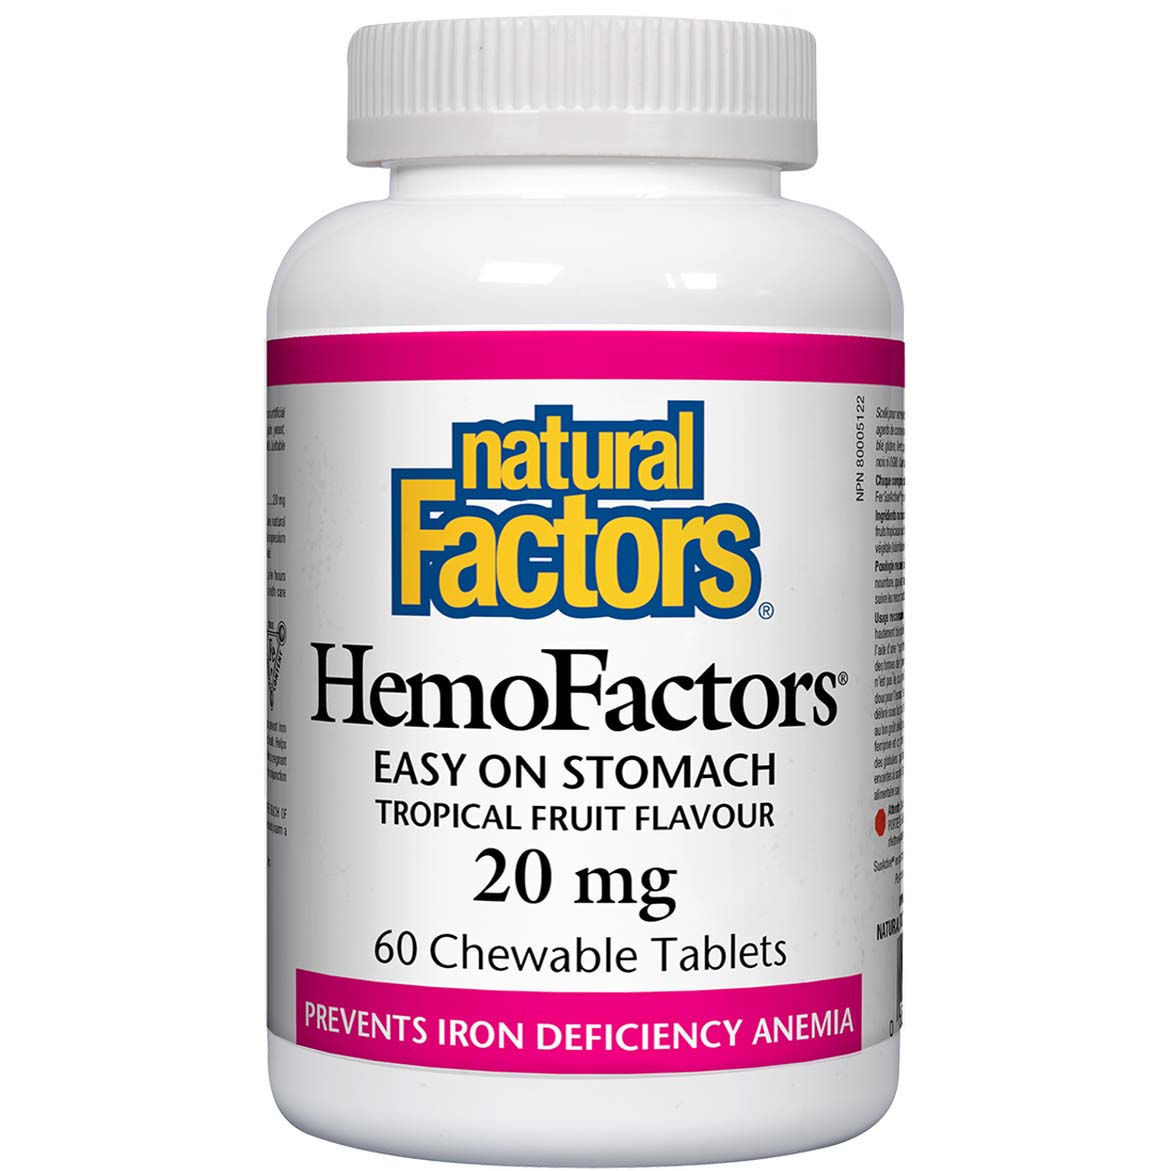 Natural Factors HemoFactors 60 Chewable Tablets 20 mg